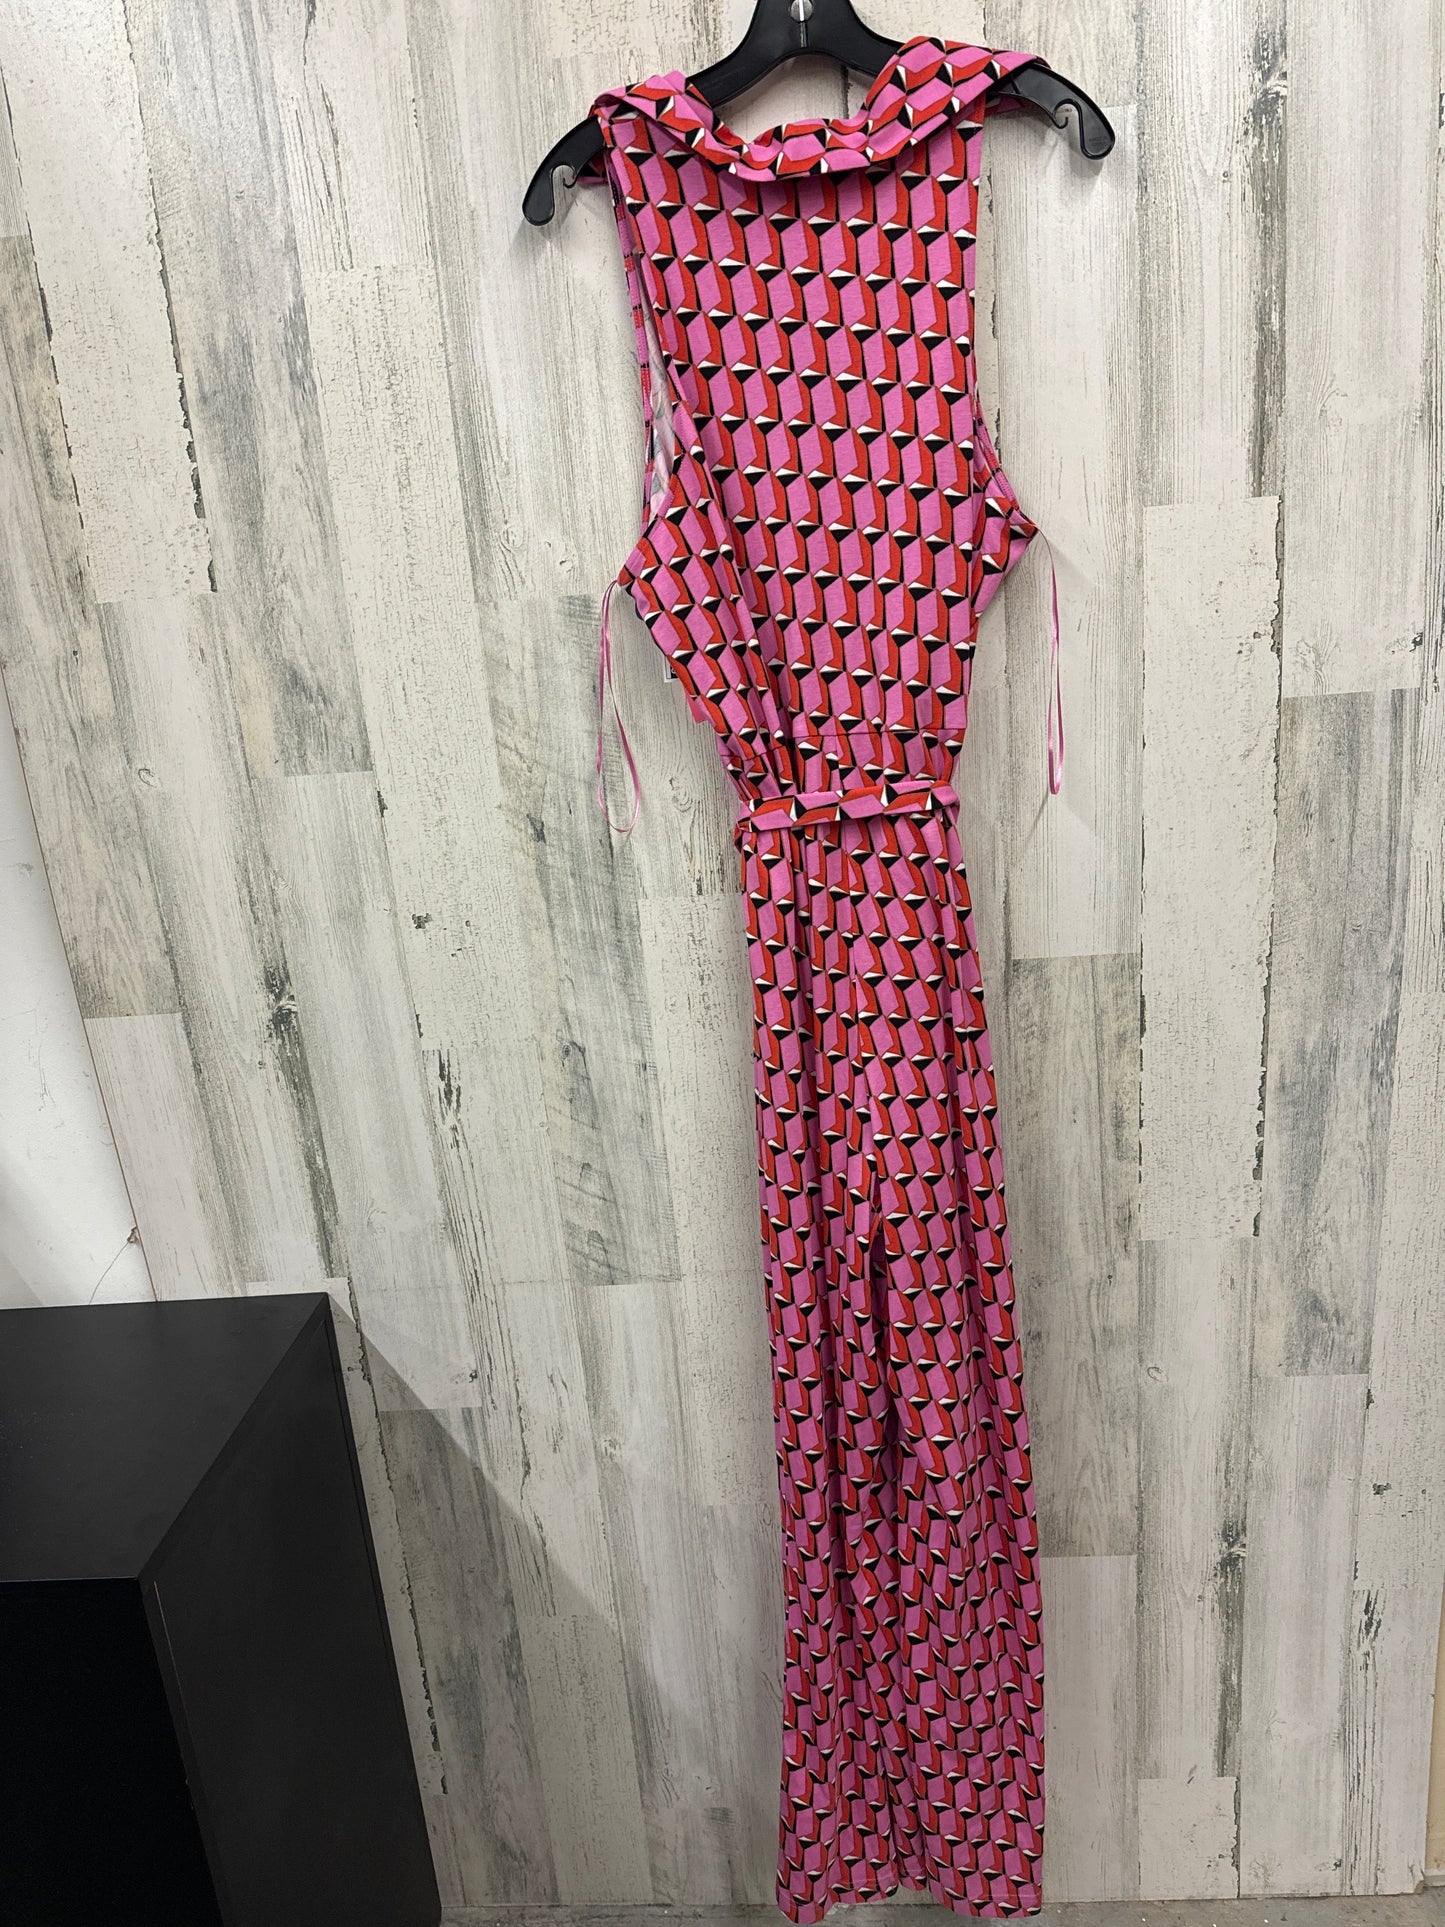 Dress Casual Maxi By Diane Von Furstenberg  Size: Xxl